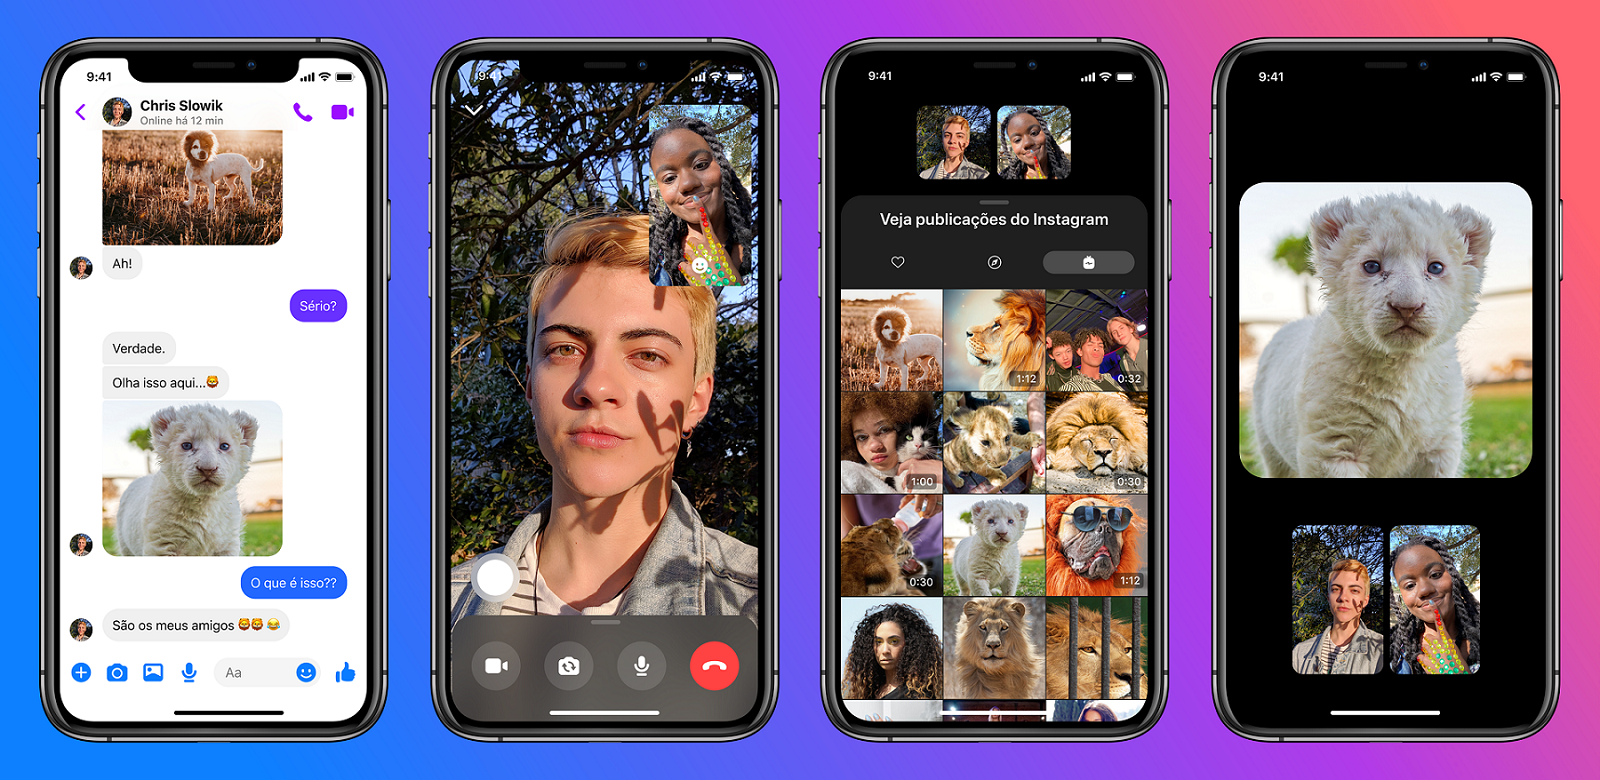 Facebook Messenger lança integração com DM do Instagram